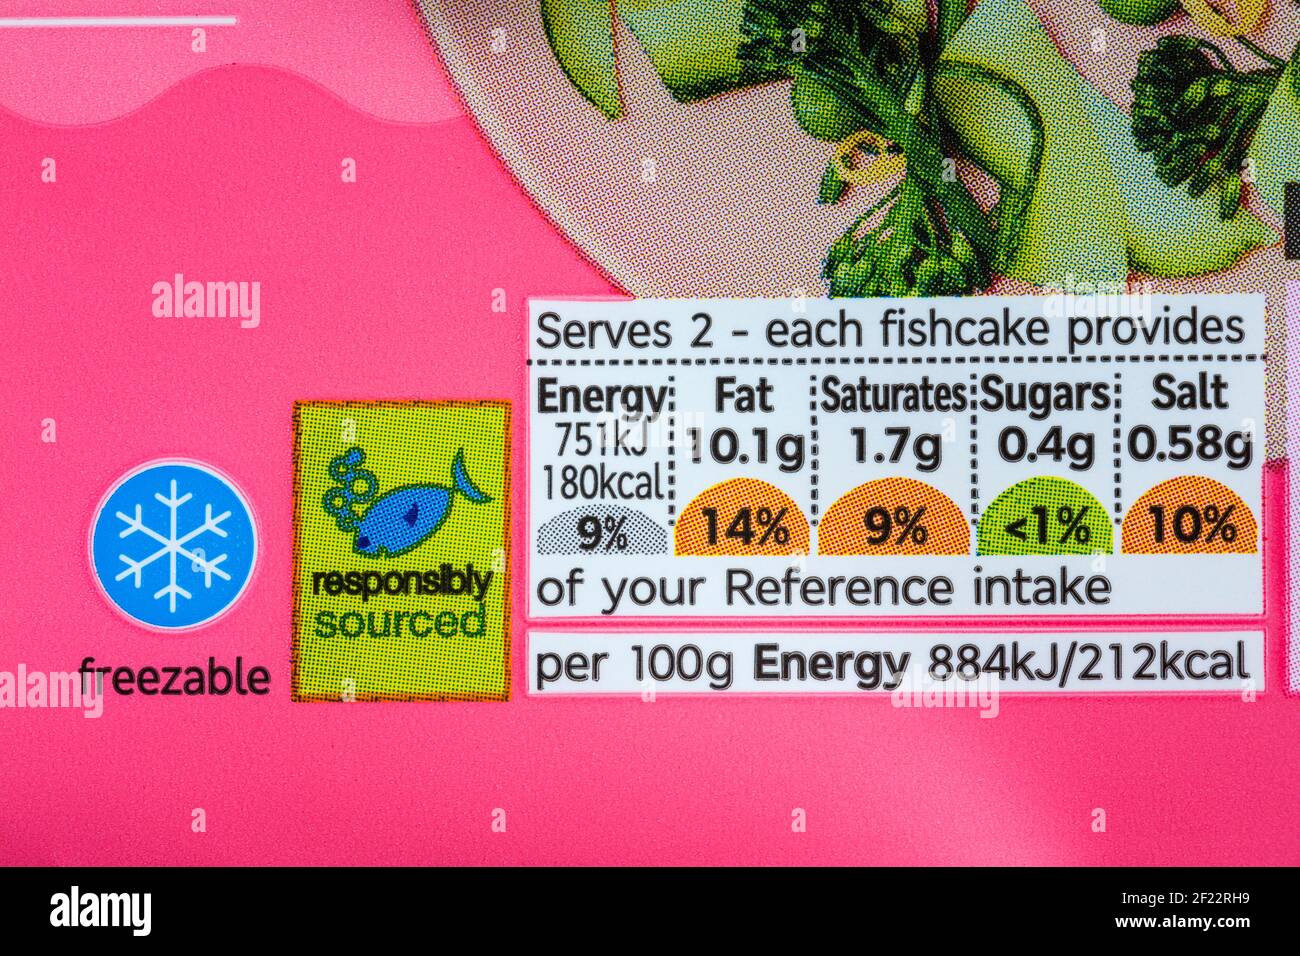 informations nutritionnelles système de signalisation routière avec système à code couleur Et symbole de source responsable sur le paquet de galettes de saumon M&S. Banque D'Images